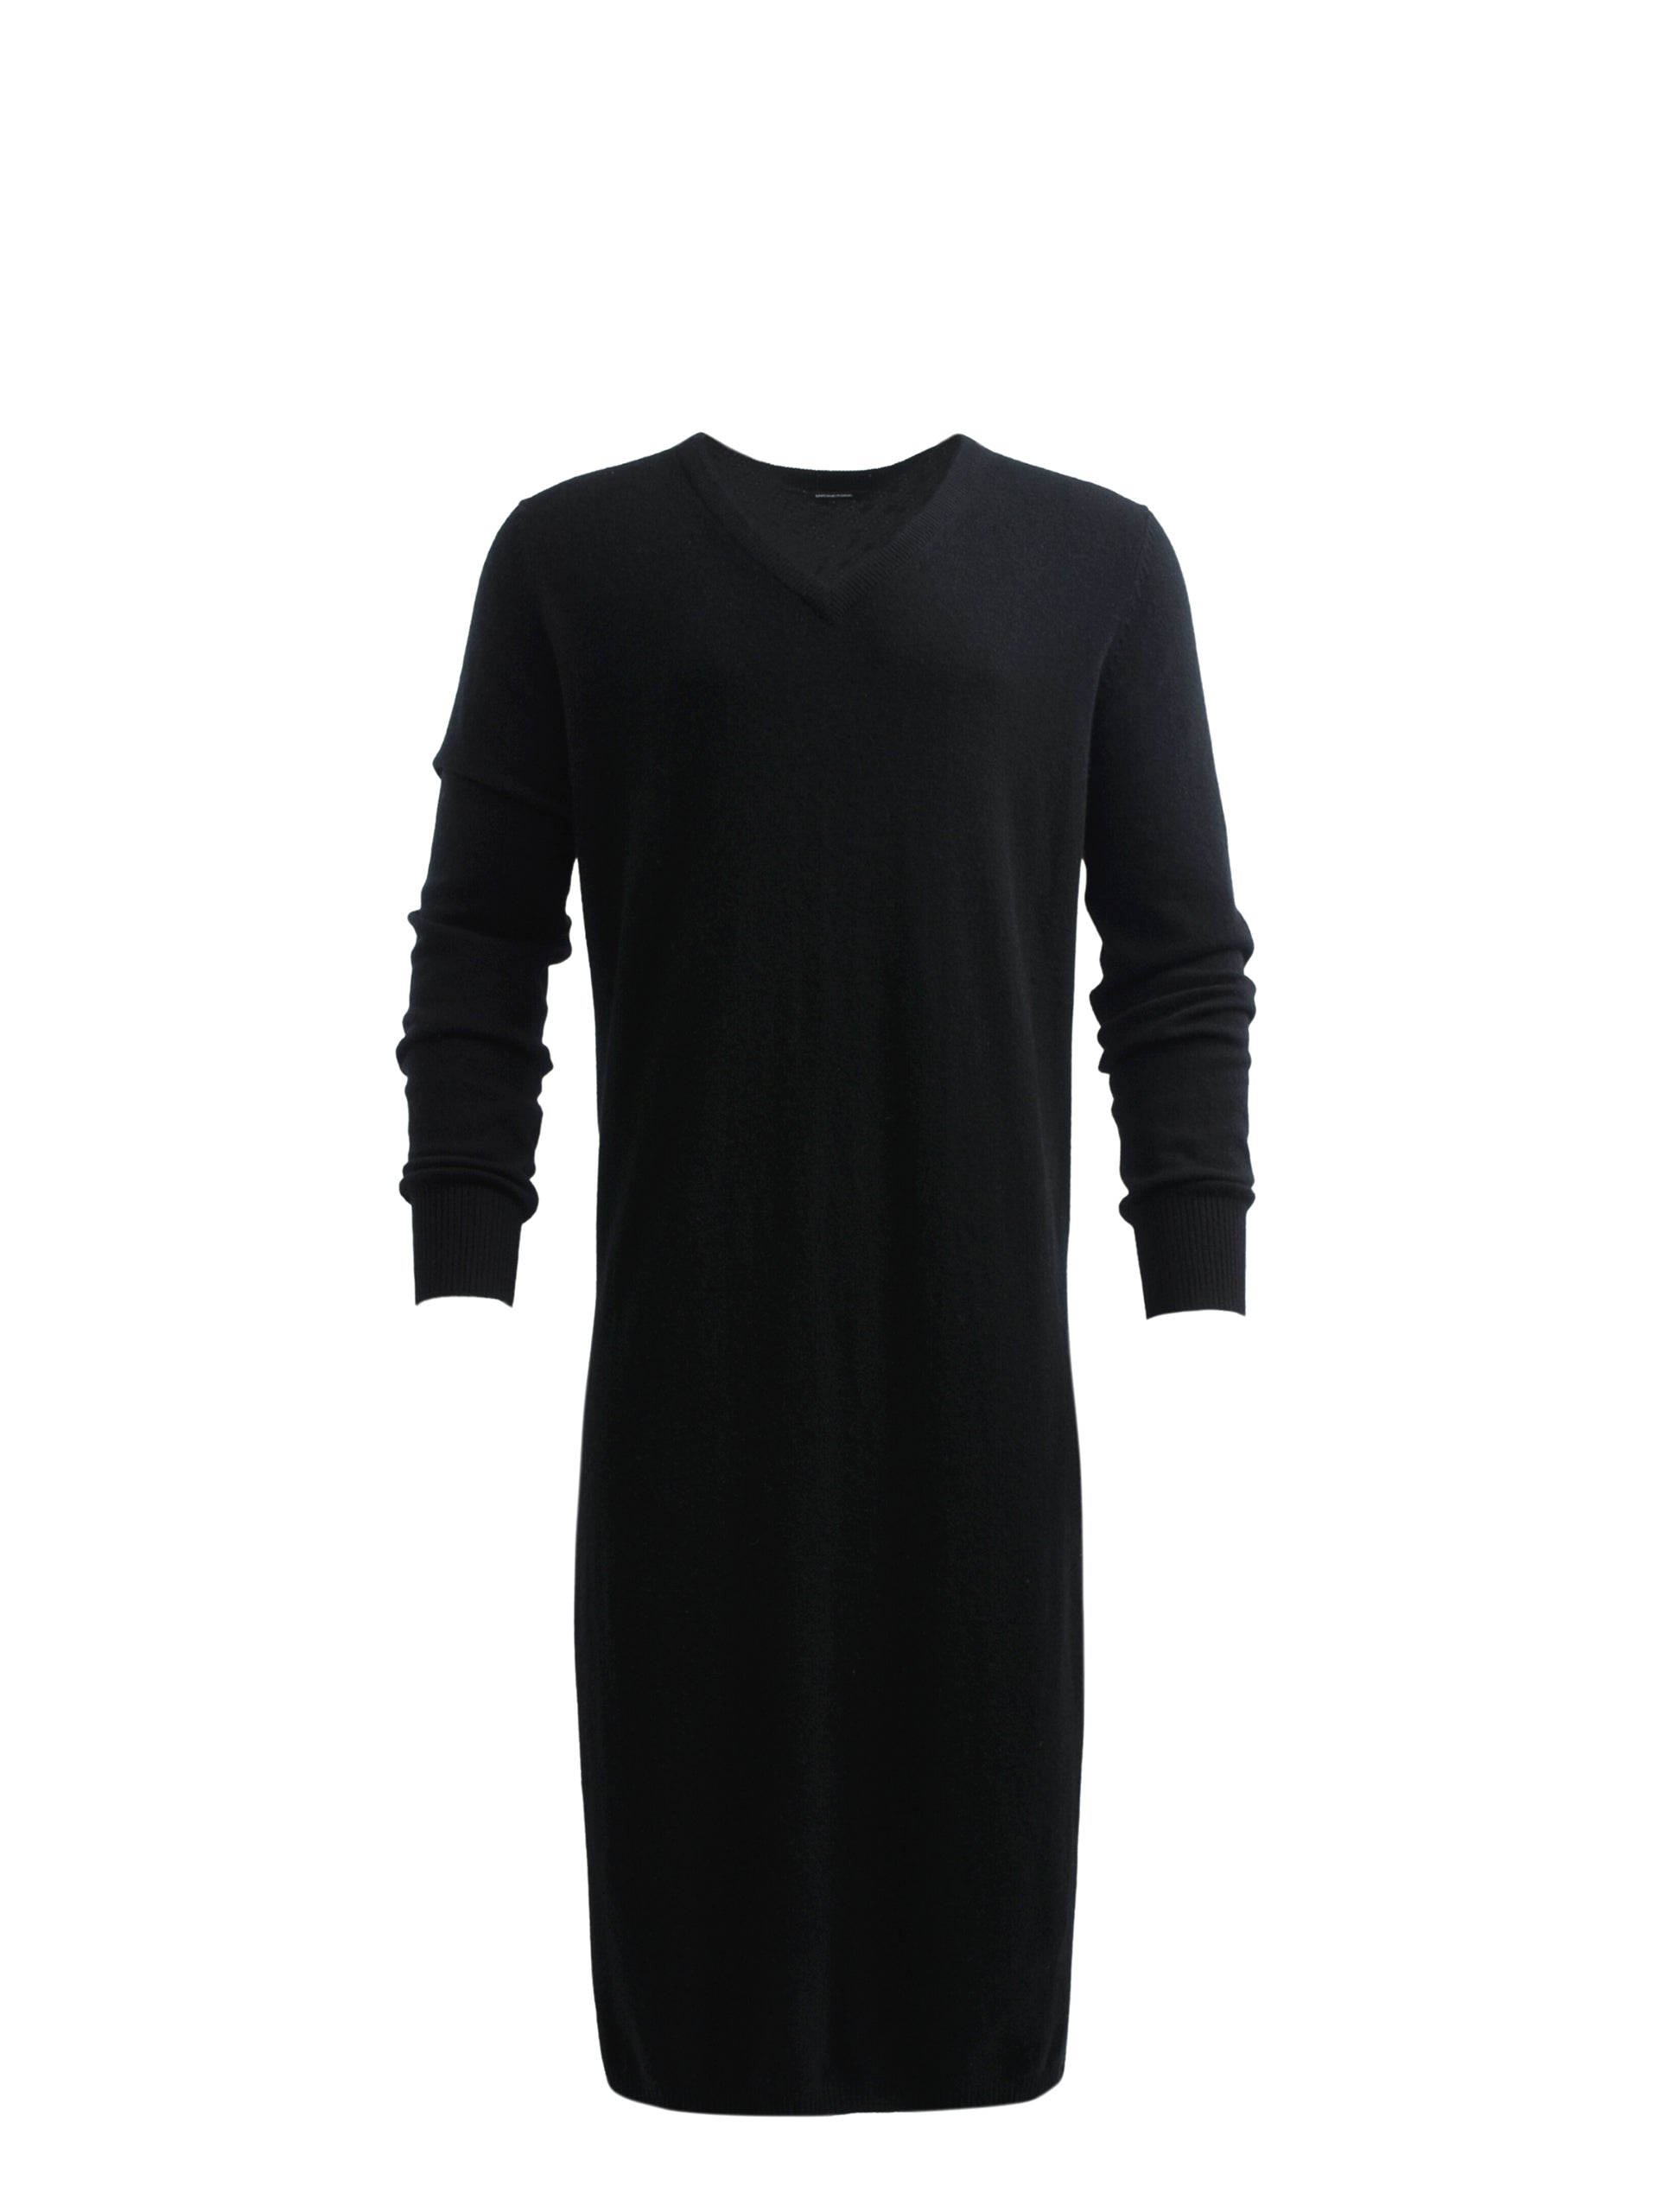 LONGLINE KNITTED DRESS JUMPER IN BLACK